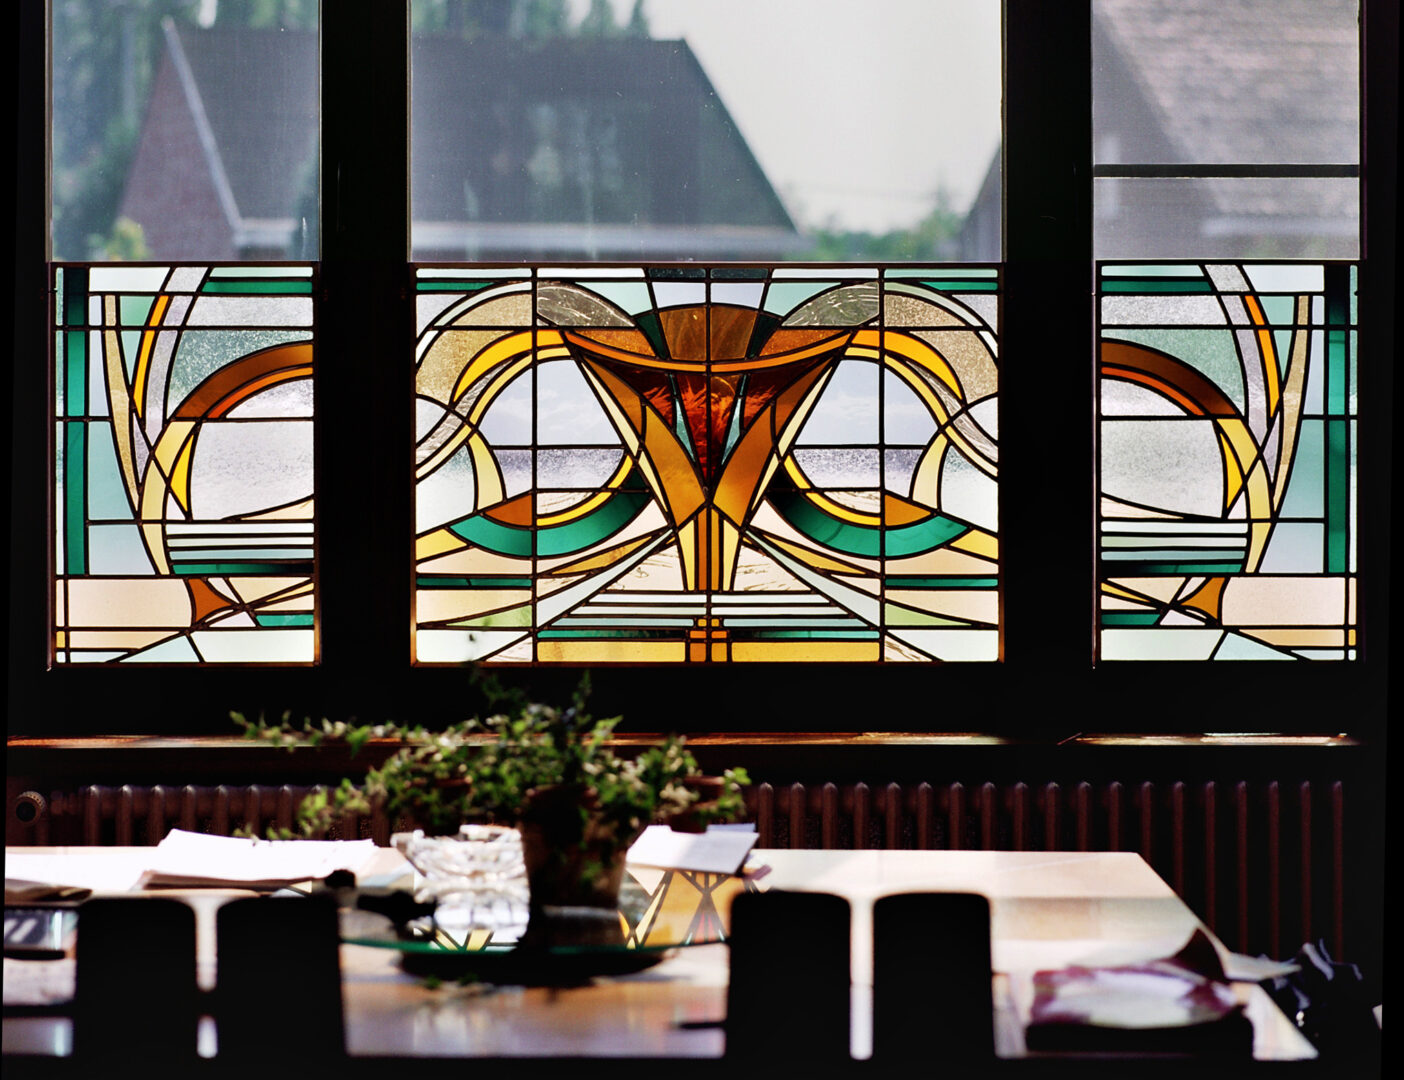 Brise-vue in Art Nouveau stijl, in historische villa te Zwijnaarde. Ontwerp: Ingrid Meyvaert © Dirk Antrop